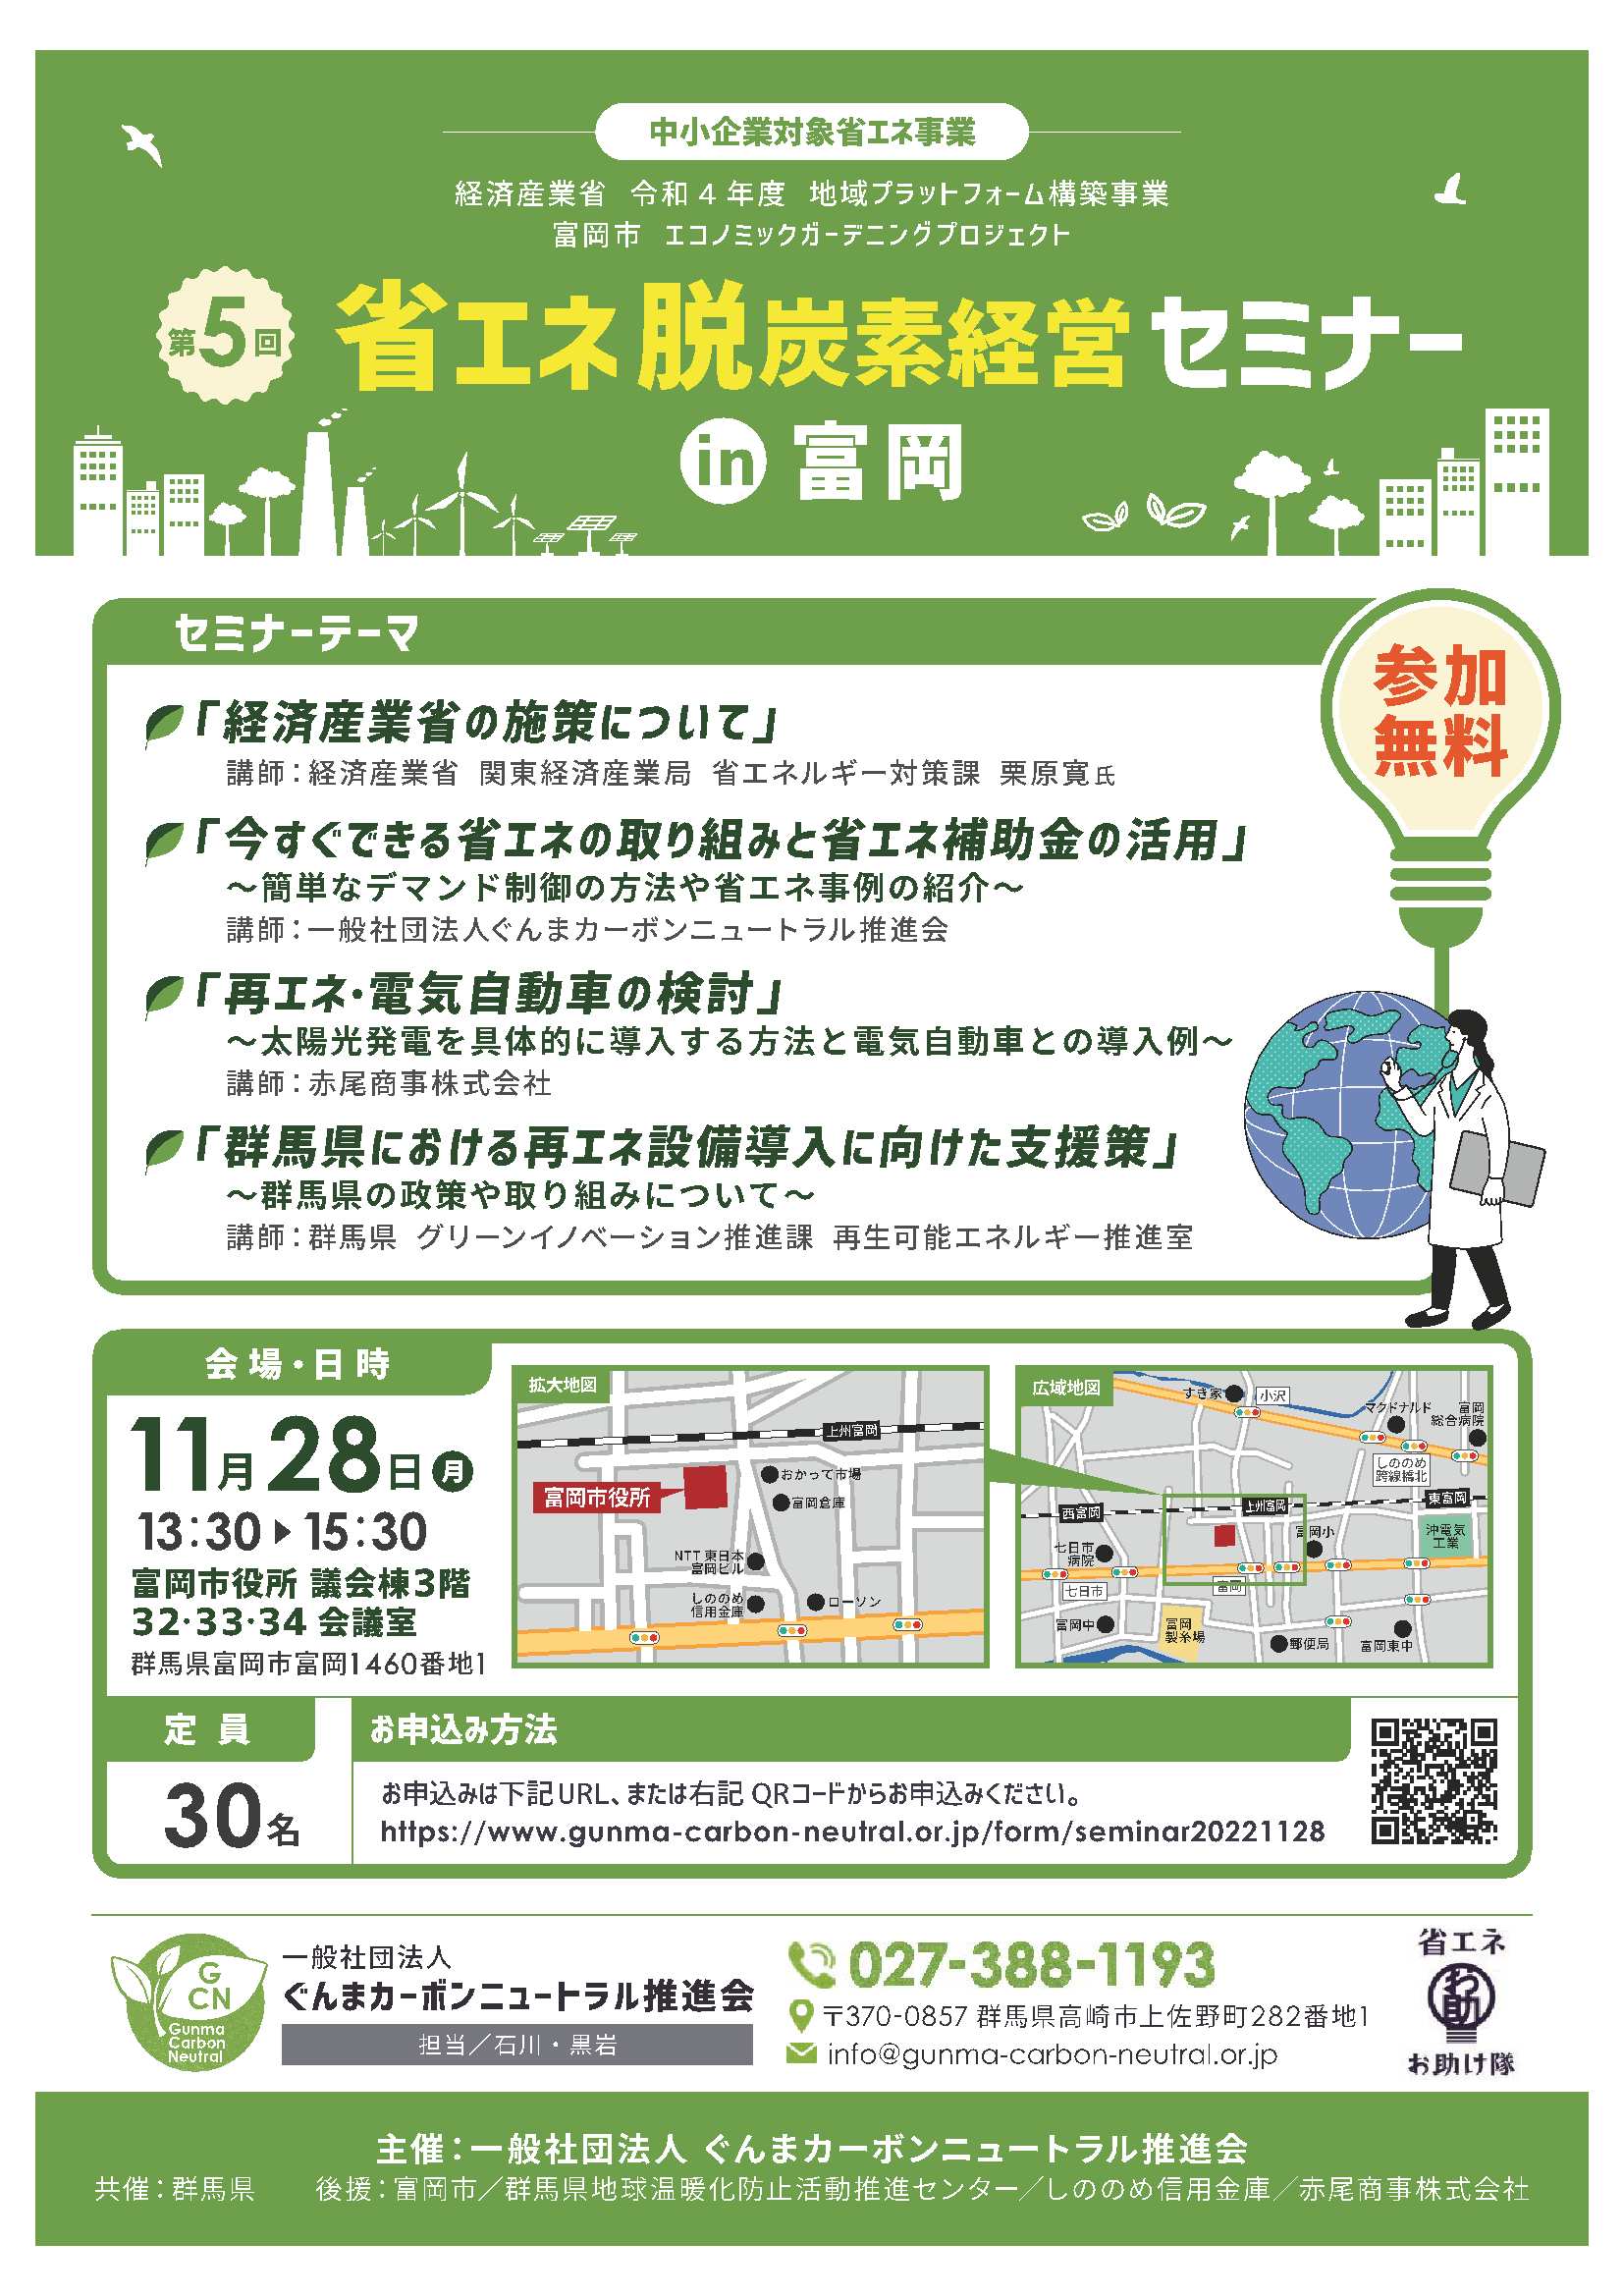 第5回省エネ・脱炭素セミナーin富岡を開催します！